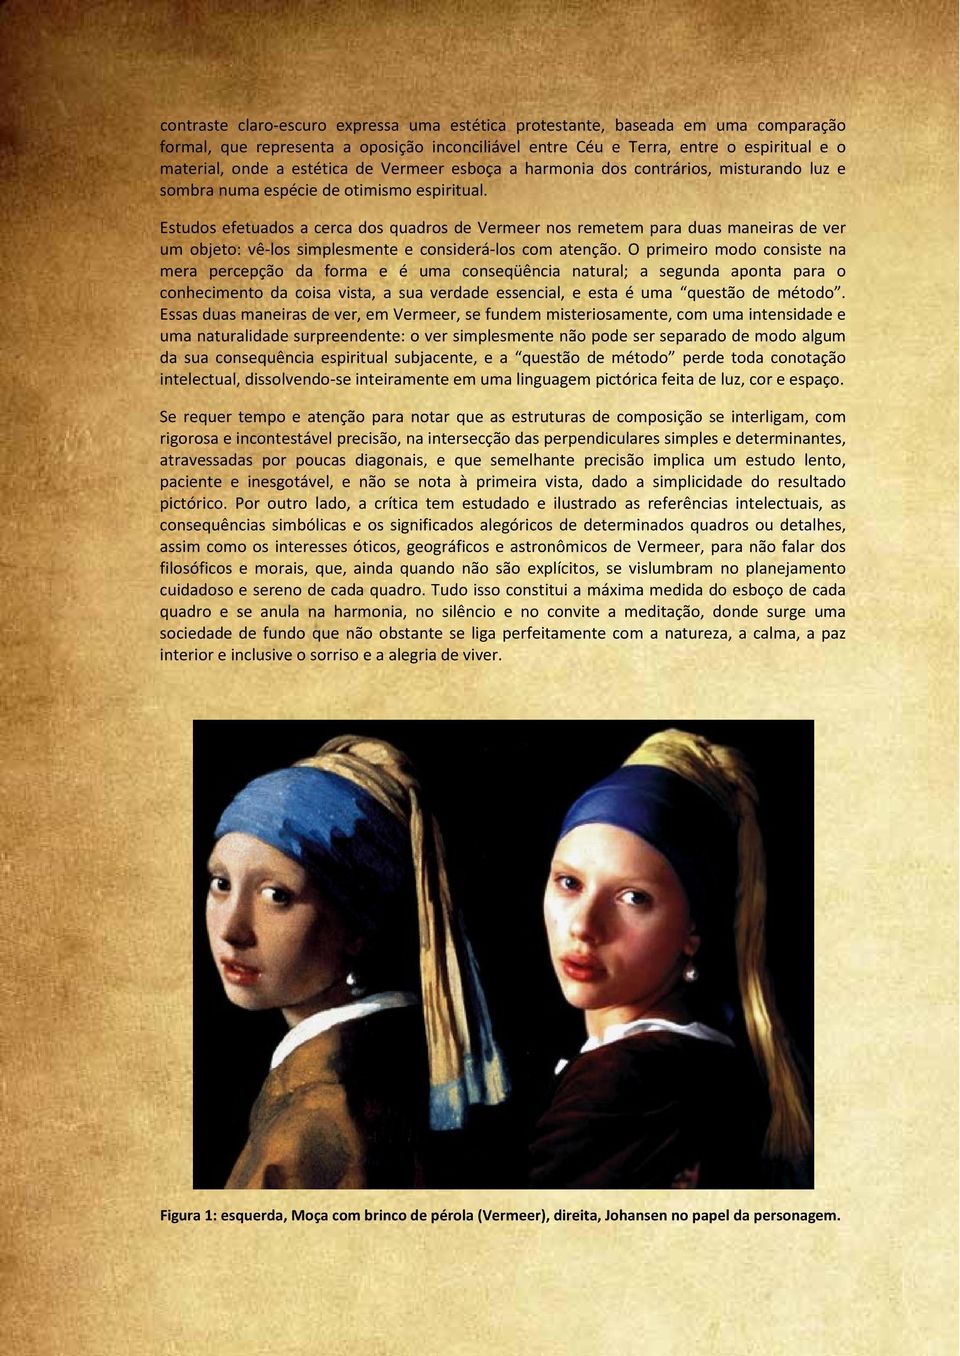 Estudos efetuados a cerca dos quadros de Vermeer nos remetem para duas maneiras de ver um objeto: vê-los simplesmente e considerá-los com atenção.